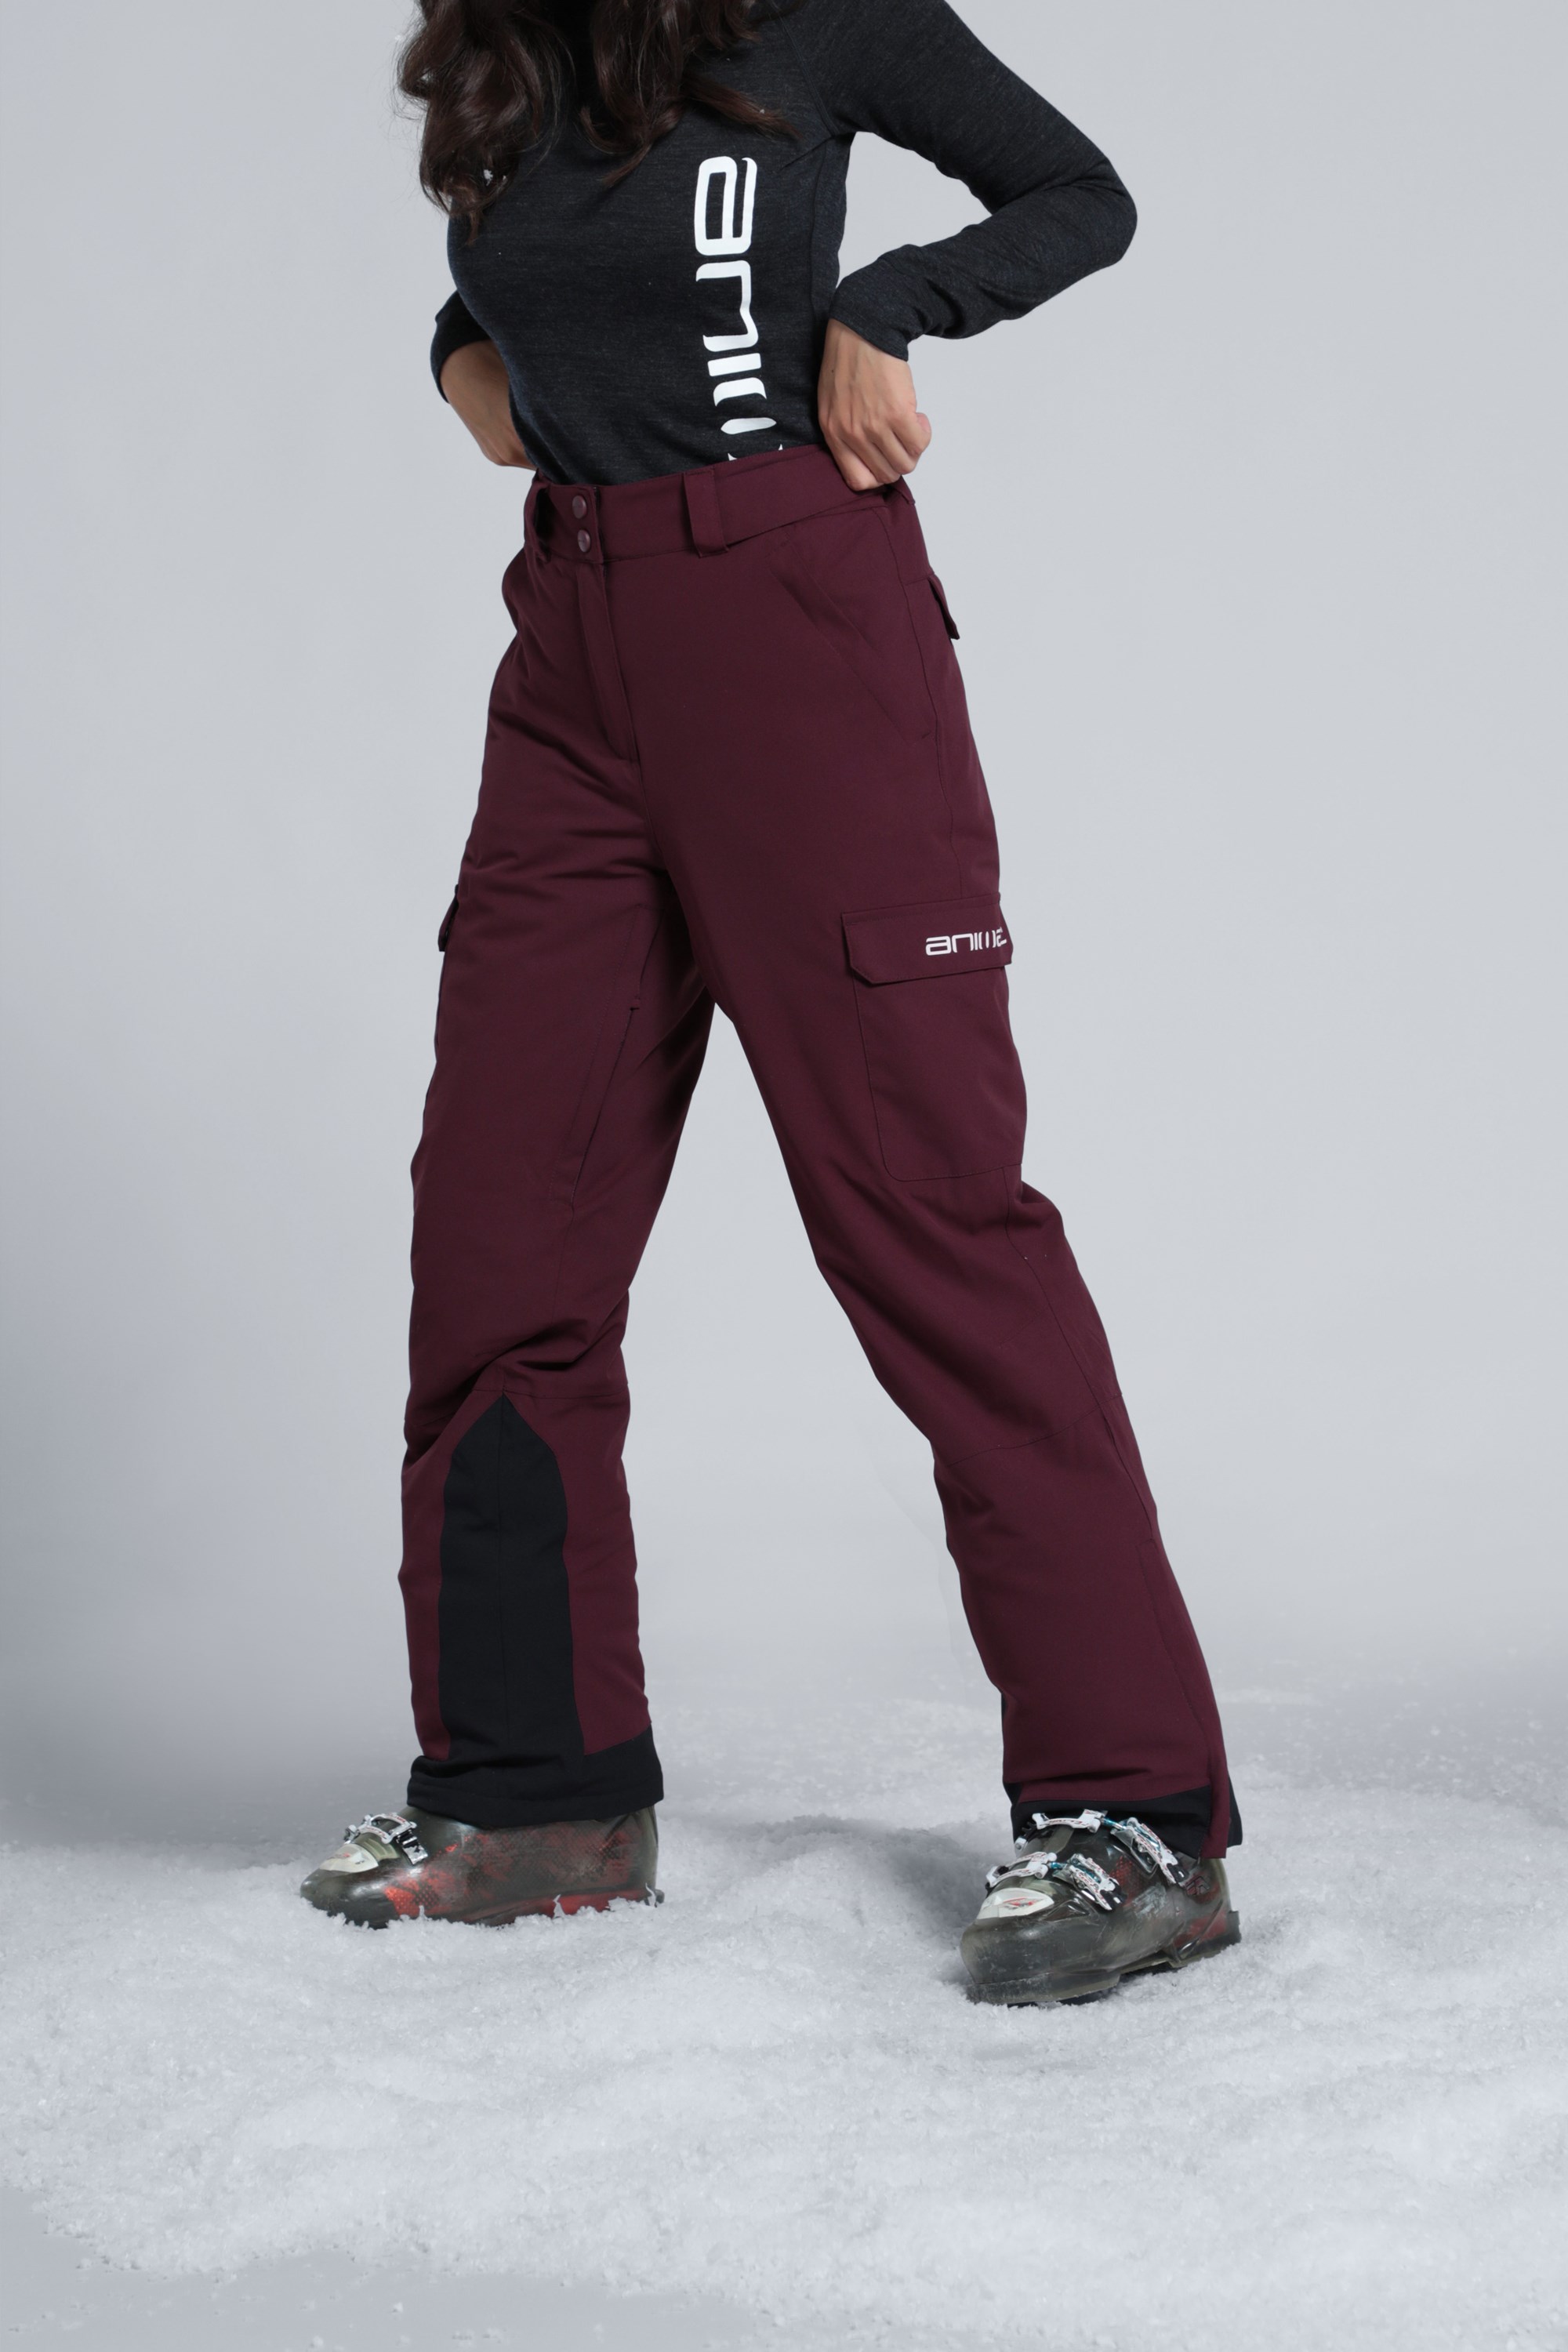 Women's Snow Pants, Ski Pants & Winter Pants NZ